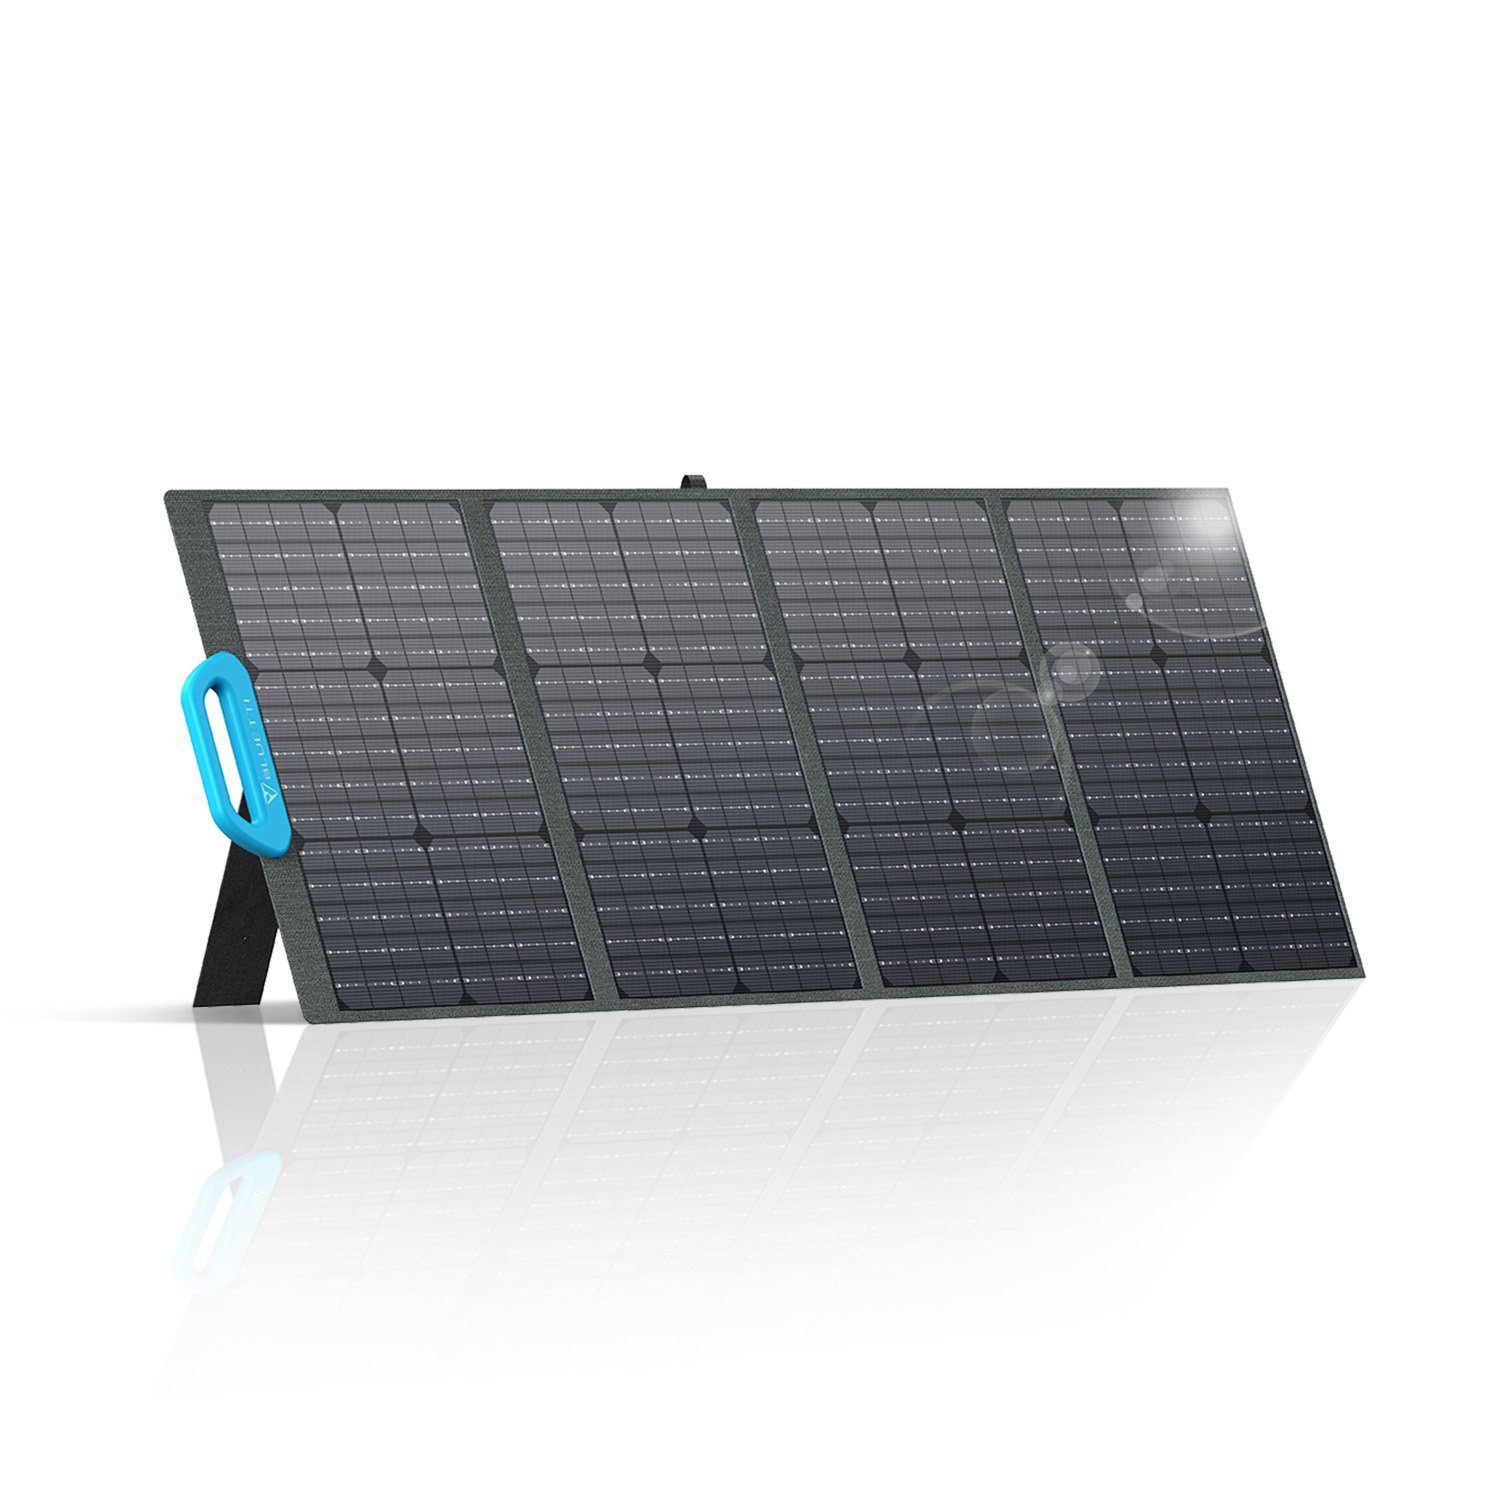 PV120 Monokristallin Solaranlage 120W W, Solarpanel, 120,00 BLUETTI